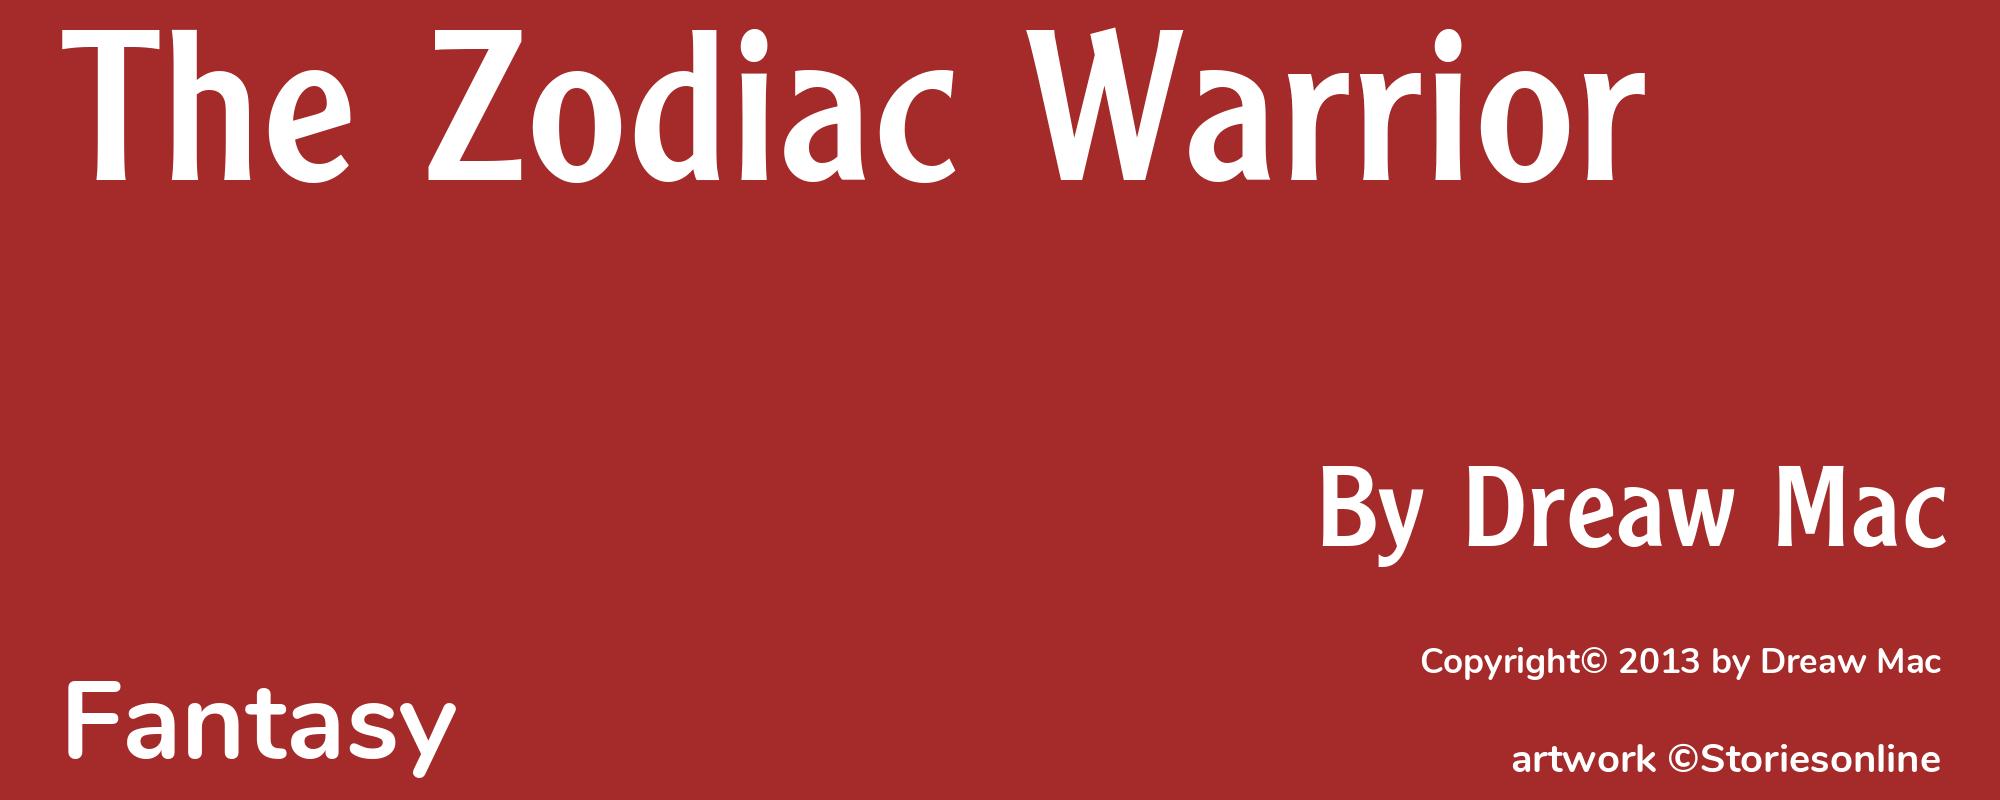 The Zodiac Warrior - Cover